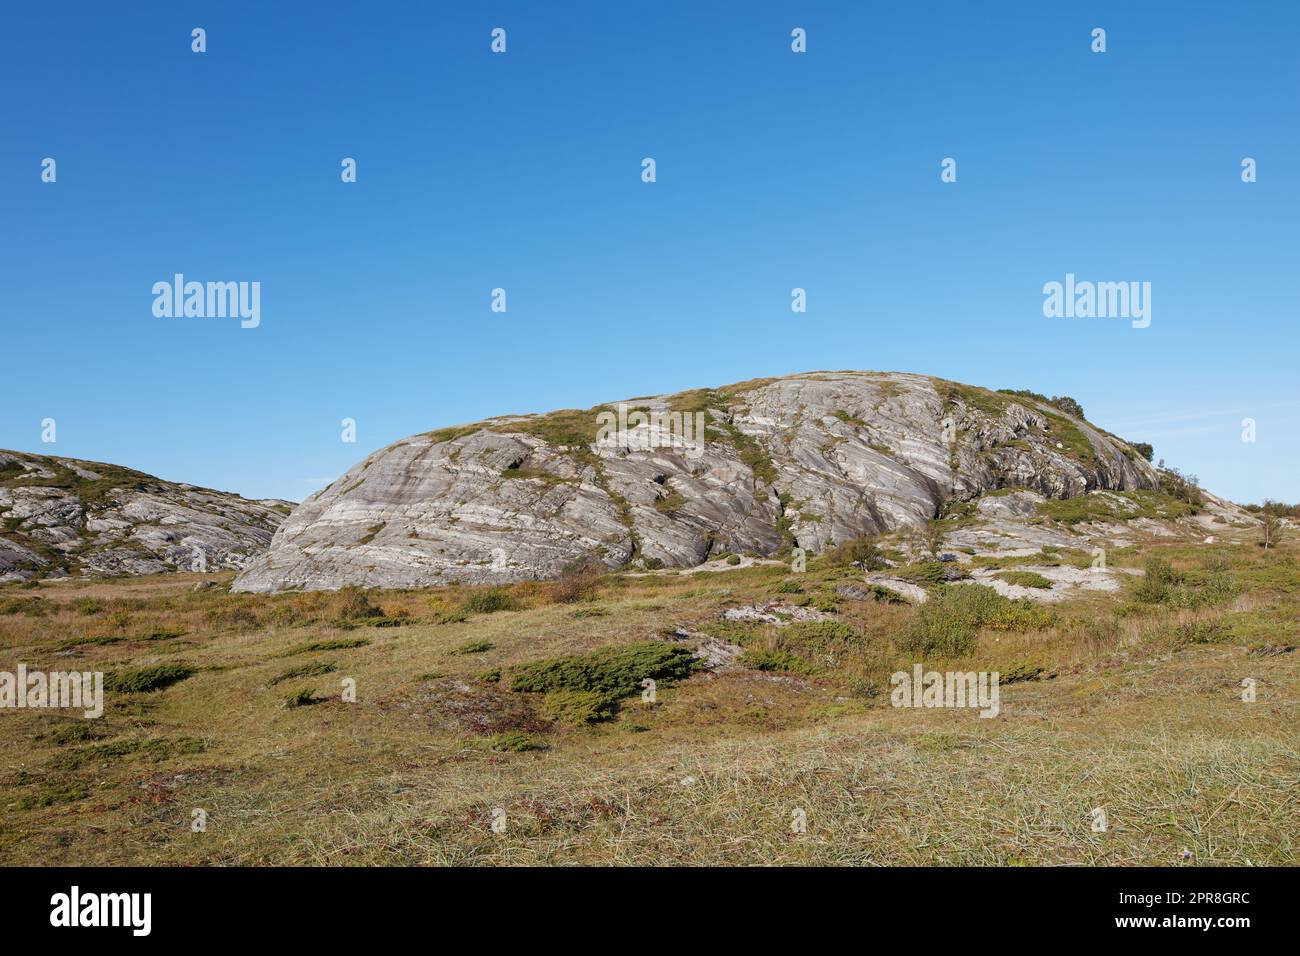 Paysage pittoresque de Bodo dans la Nordland avec un environnement naturel et ciel bleu copyspace fond. Formation de roche sur la montagne et la colline avec des plantes arides. Sentiers de randonnée dans la campagne de la Norvège Banque D'Images